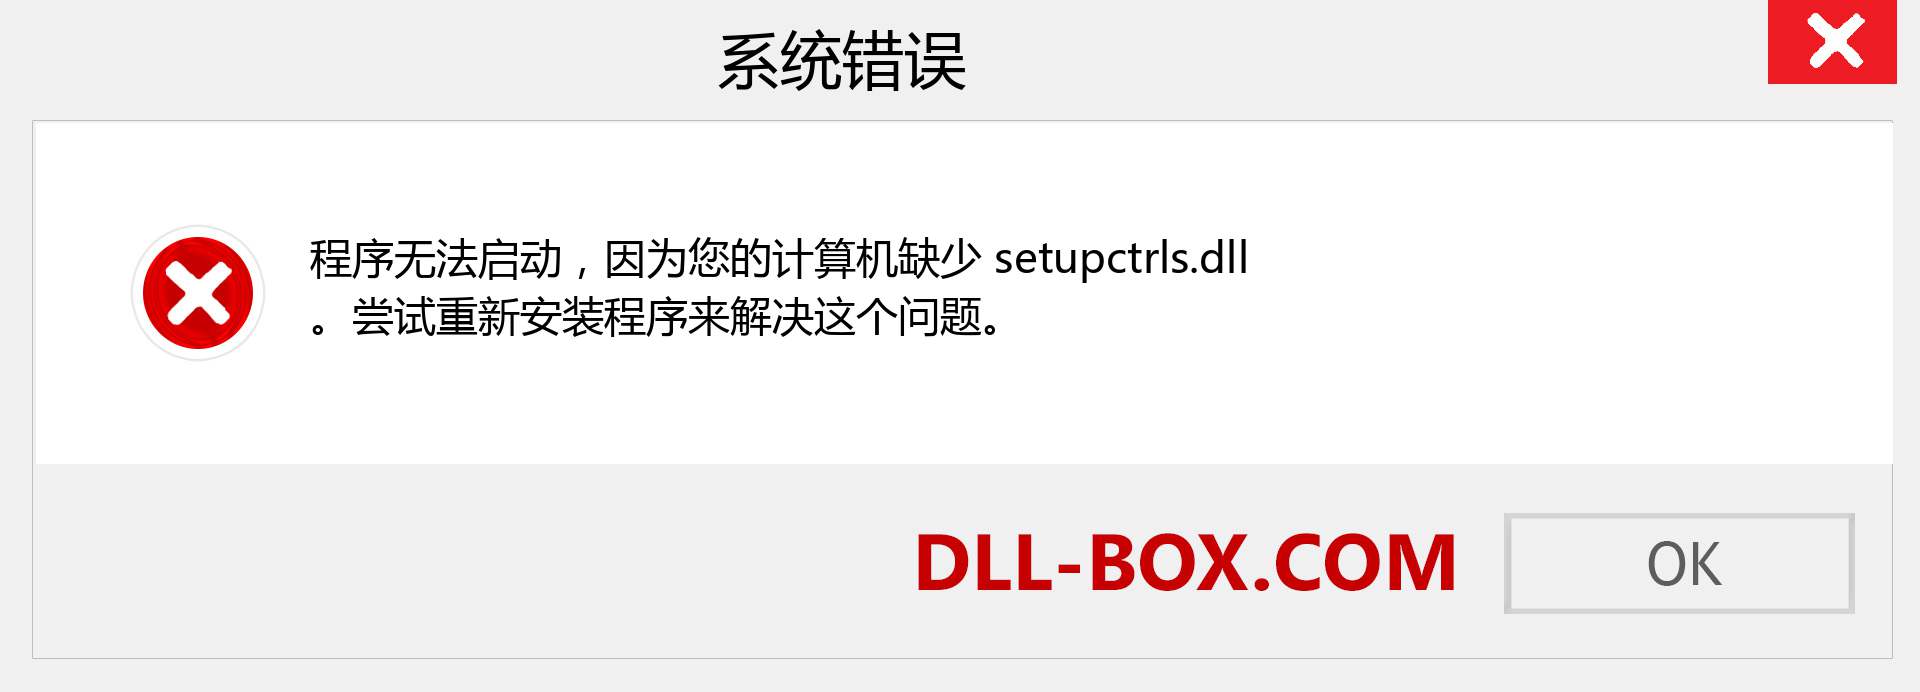 setupctrls.dll 文件丢失？。 适用于 Windows 7、8、10 的下载 - 修复 Windows、照片、图像上的 setupctrls dll 丢失错误